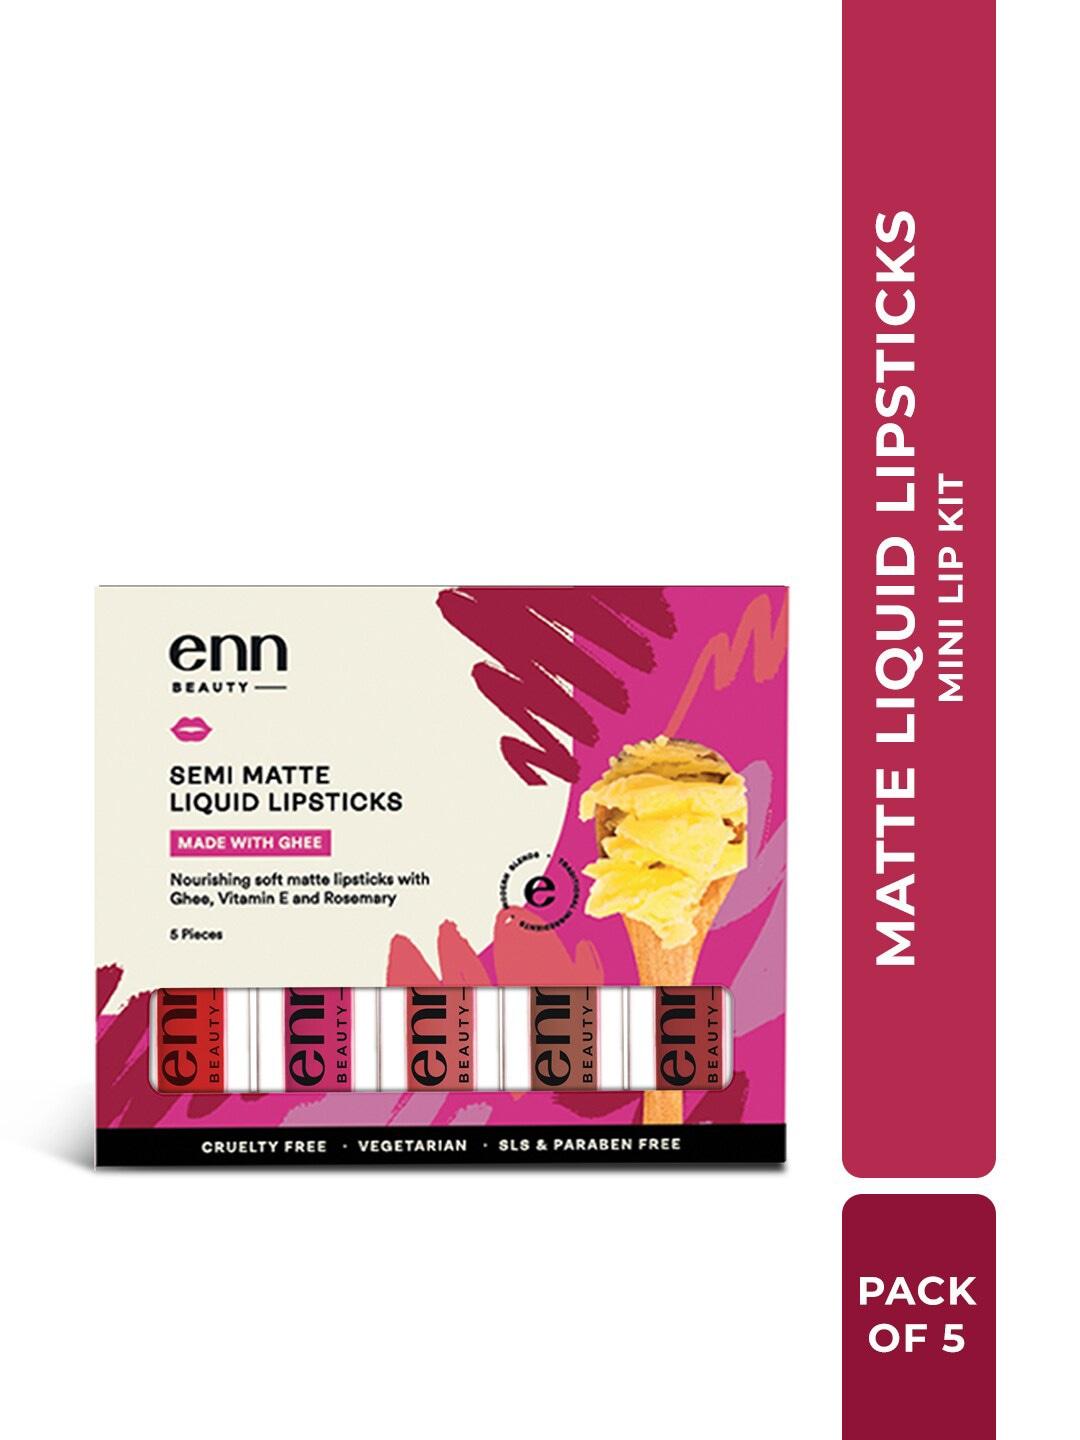 enn-set-of-5-semi-matte-mini-liquid-lipsticks-with-ghee-&-vitamin-e---1.5ml-each